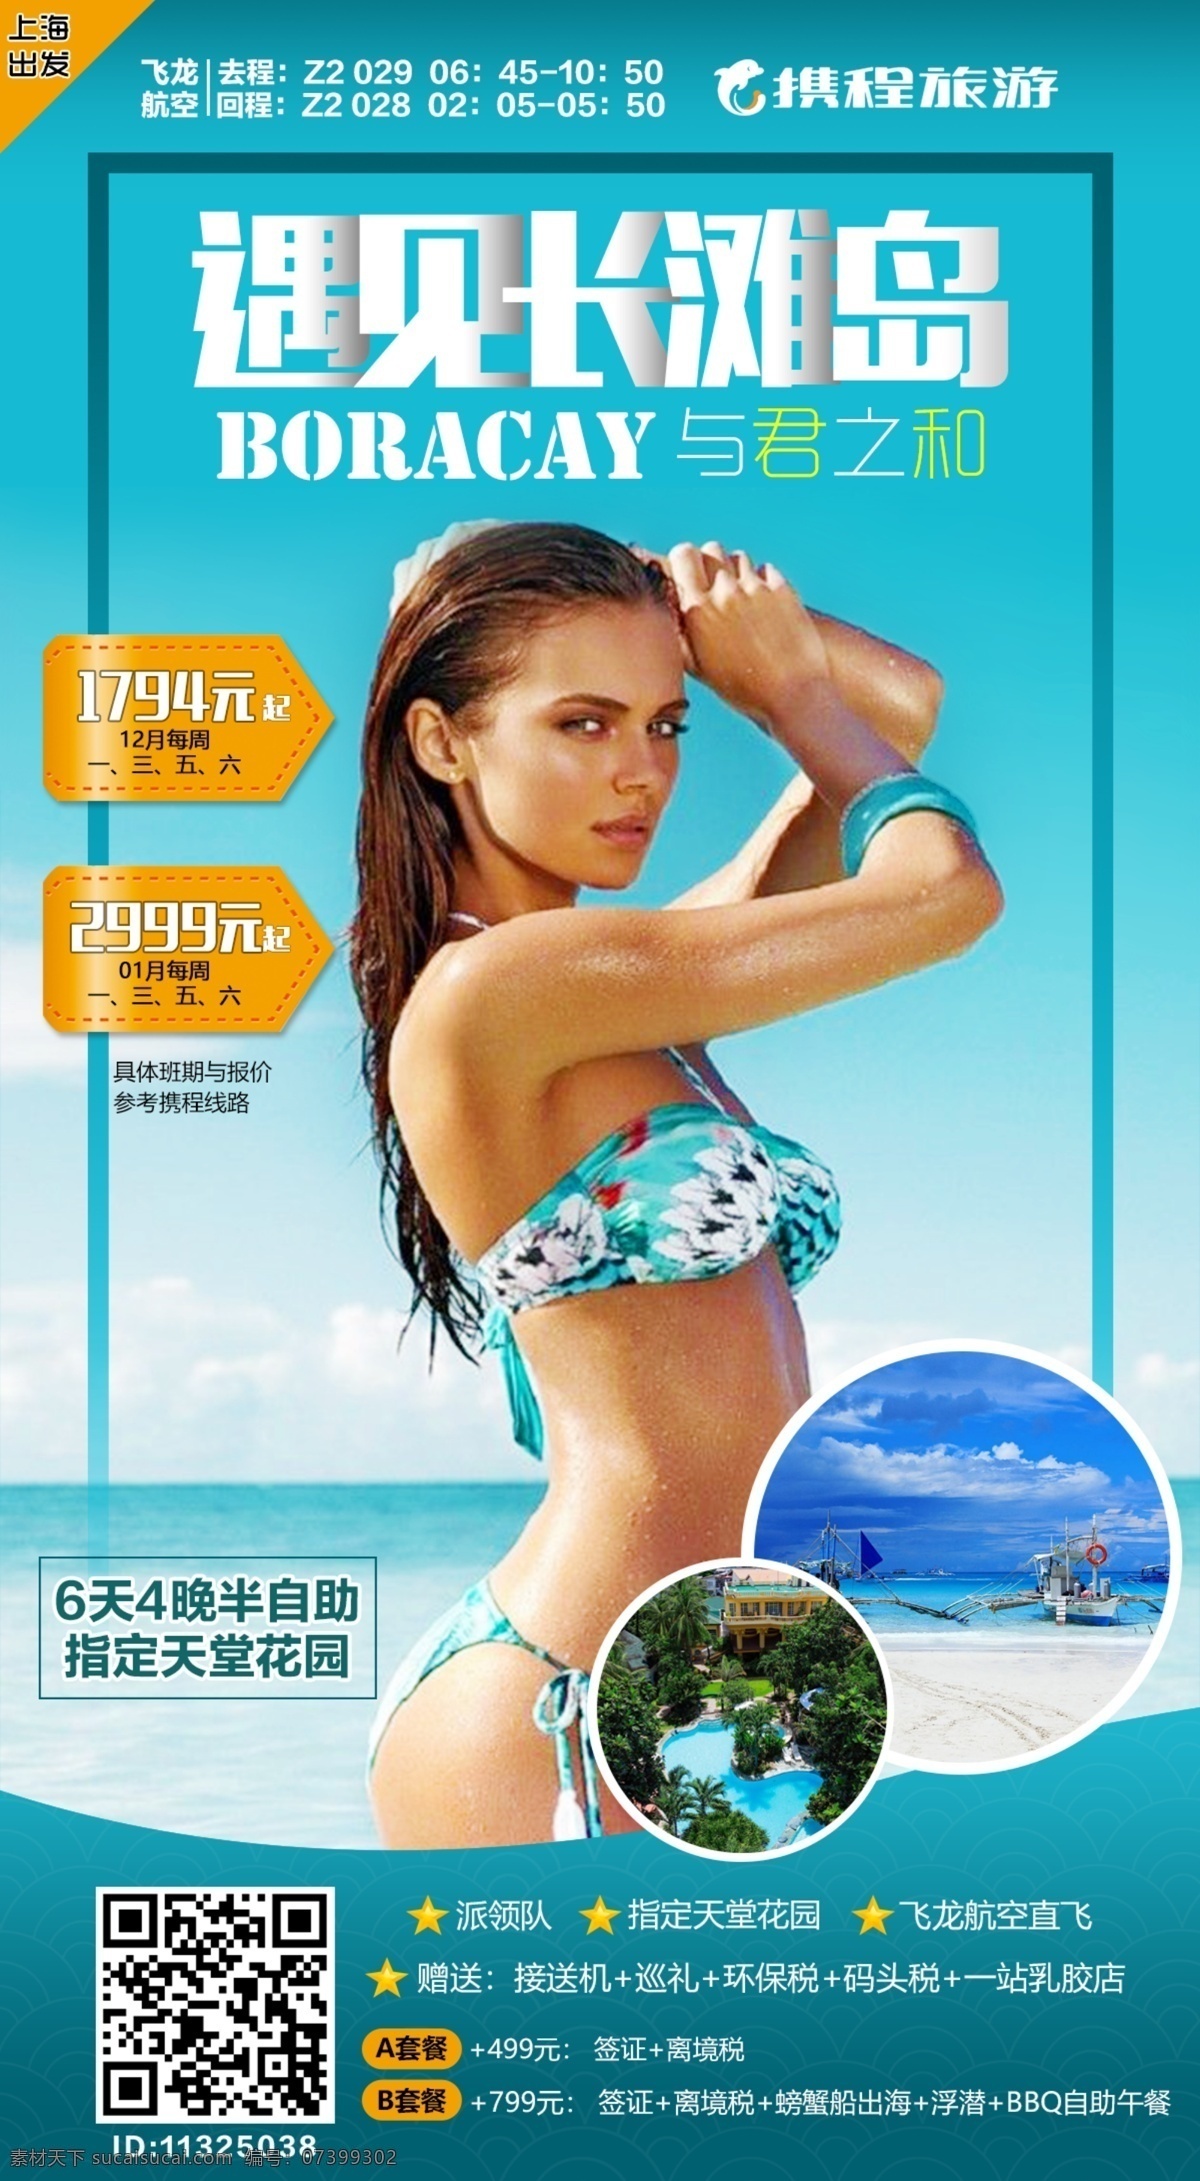 菲律宾 旅游海报 长滩岛 旅游 海岛 海报 美女 微信 二维码 金发 招贴设计